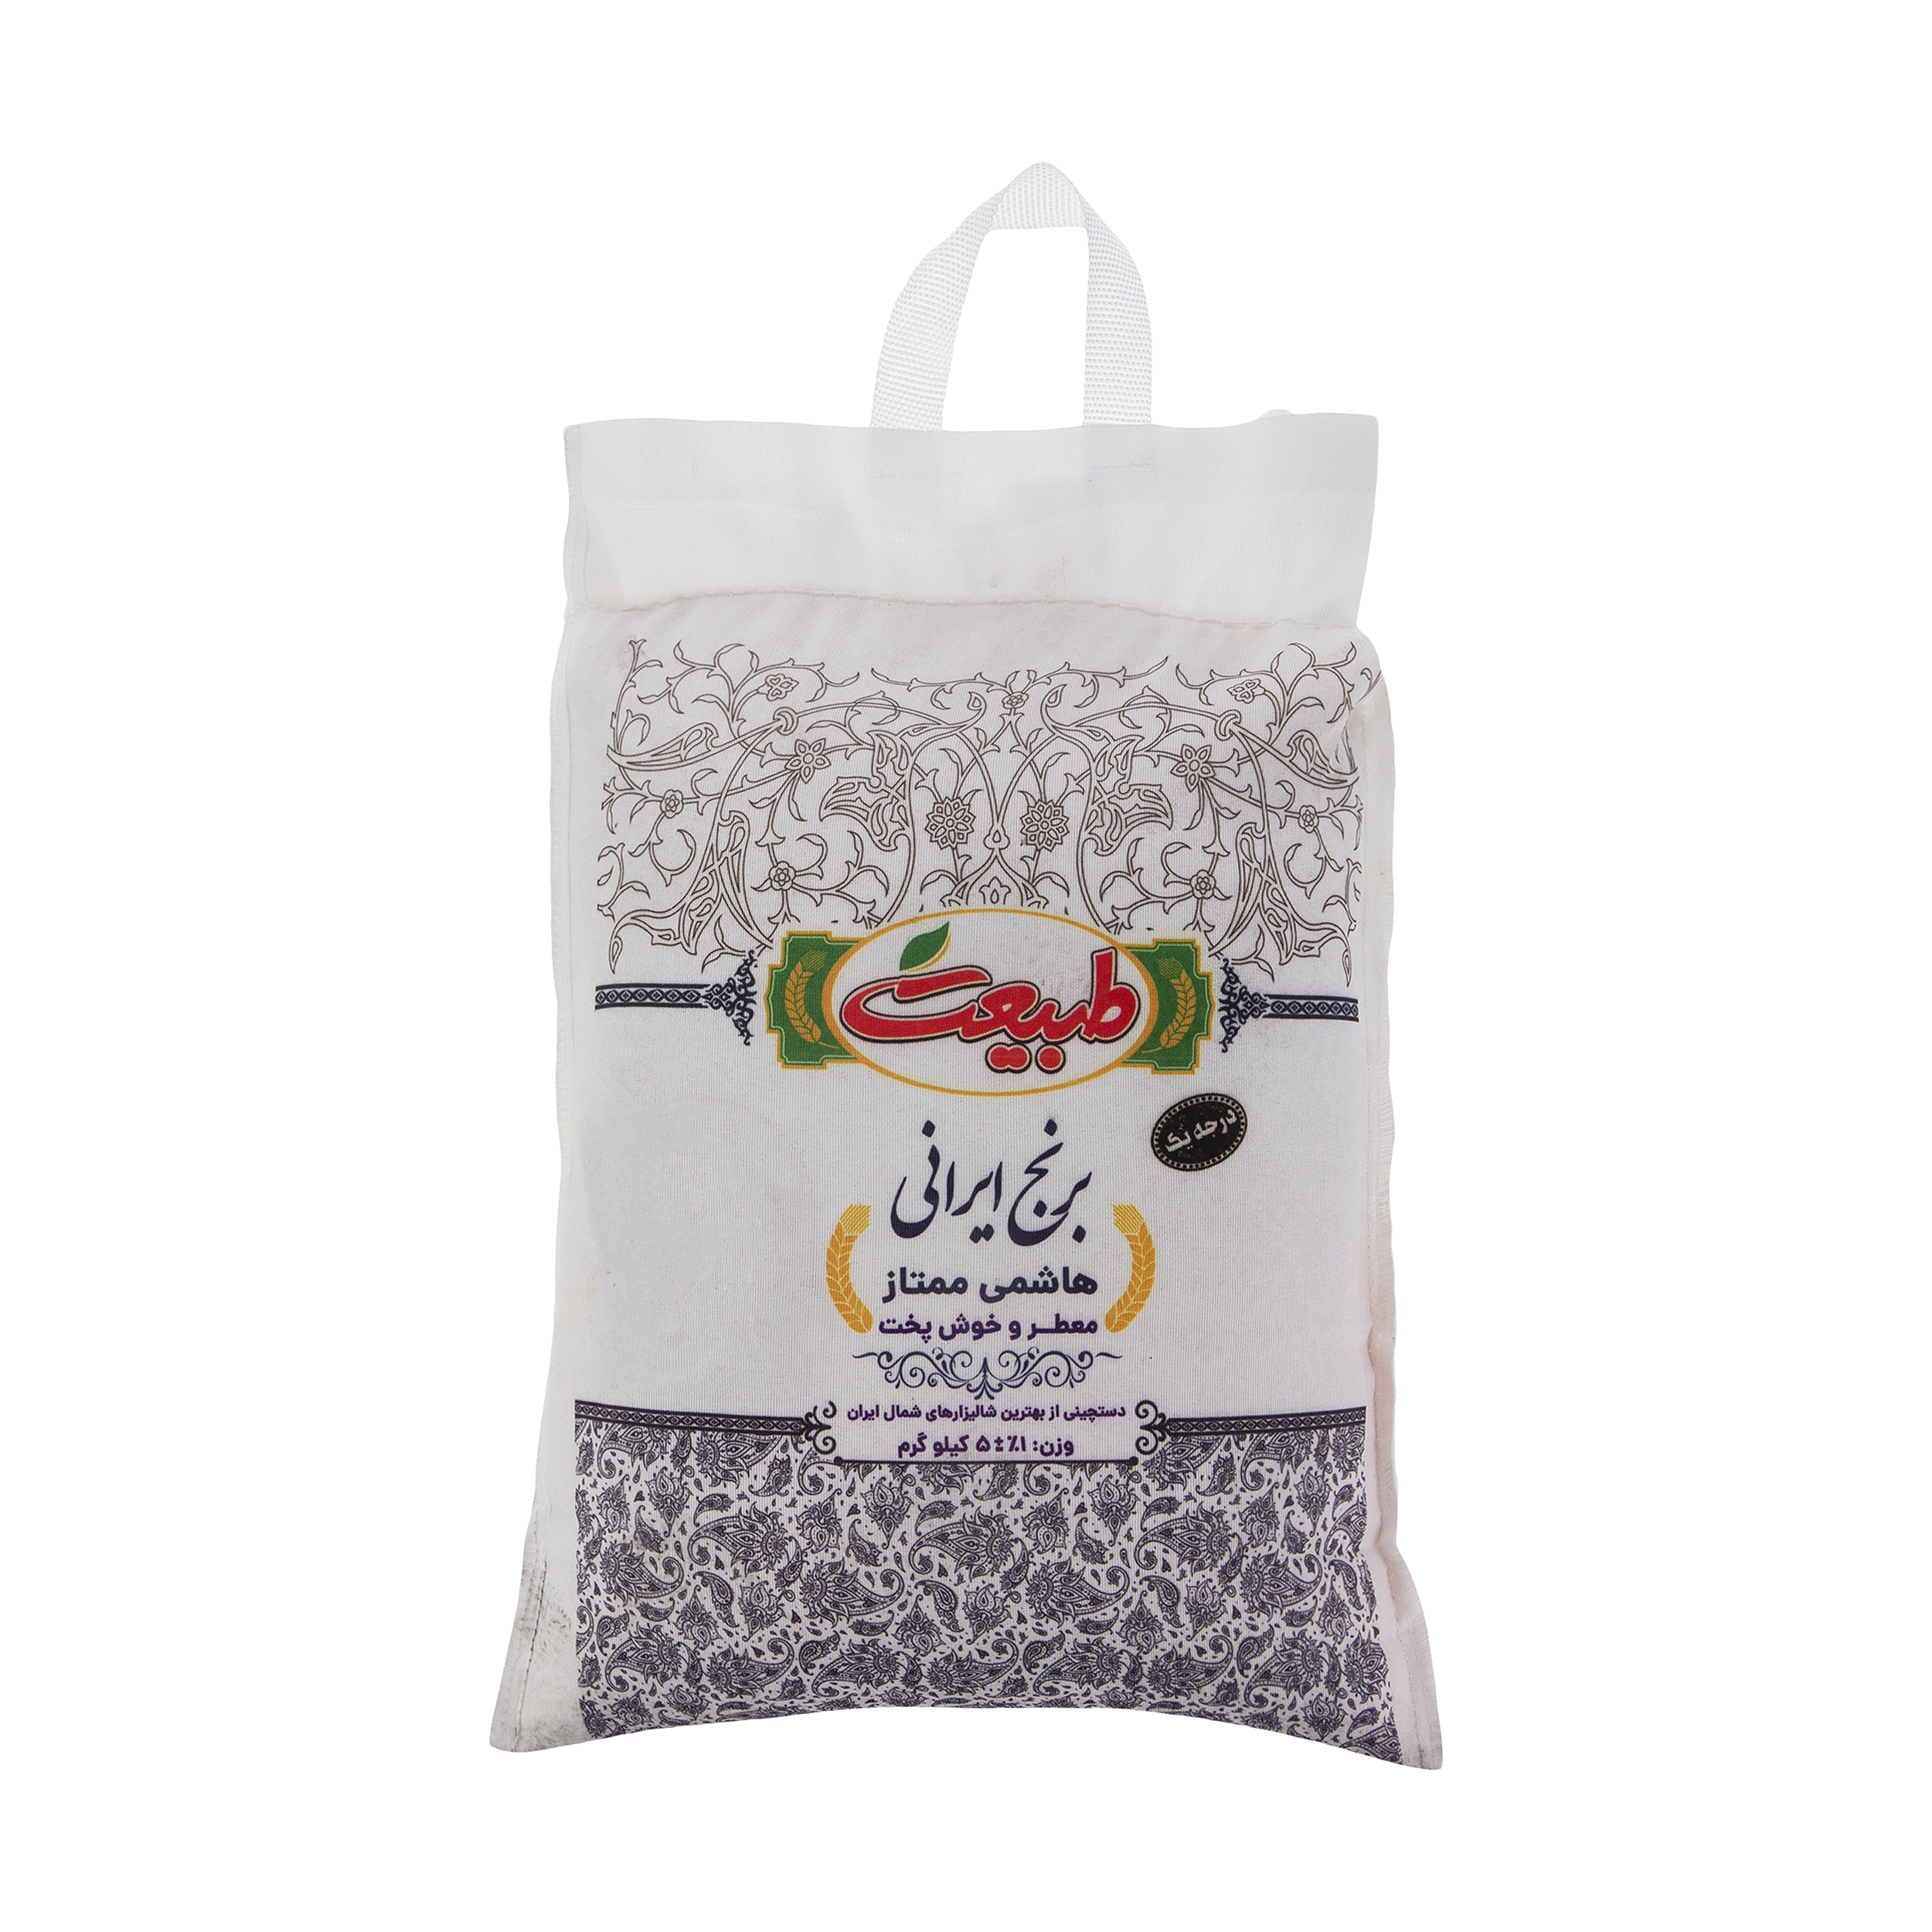 نکته خرید - قیمت روز برنج هاشمی ممتاز طبیعت - 5 کیلوگرم خرید